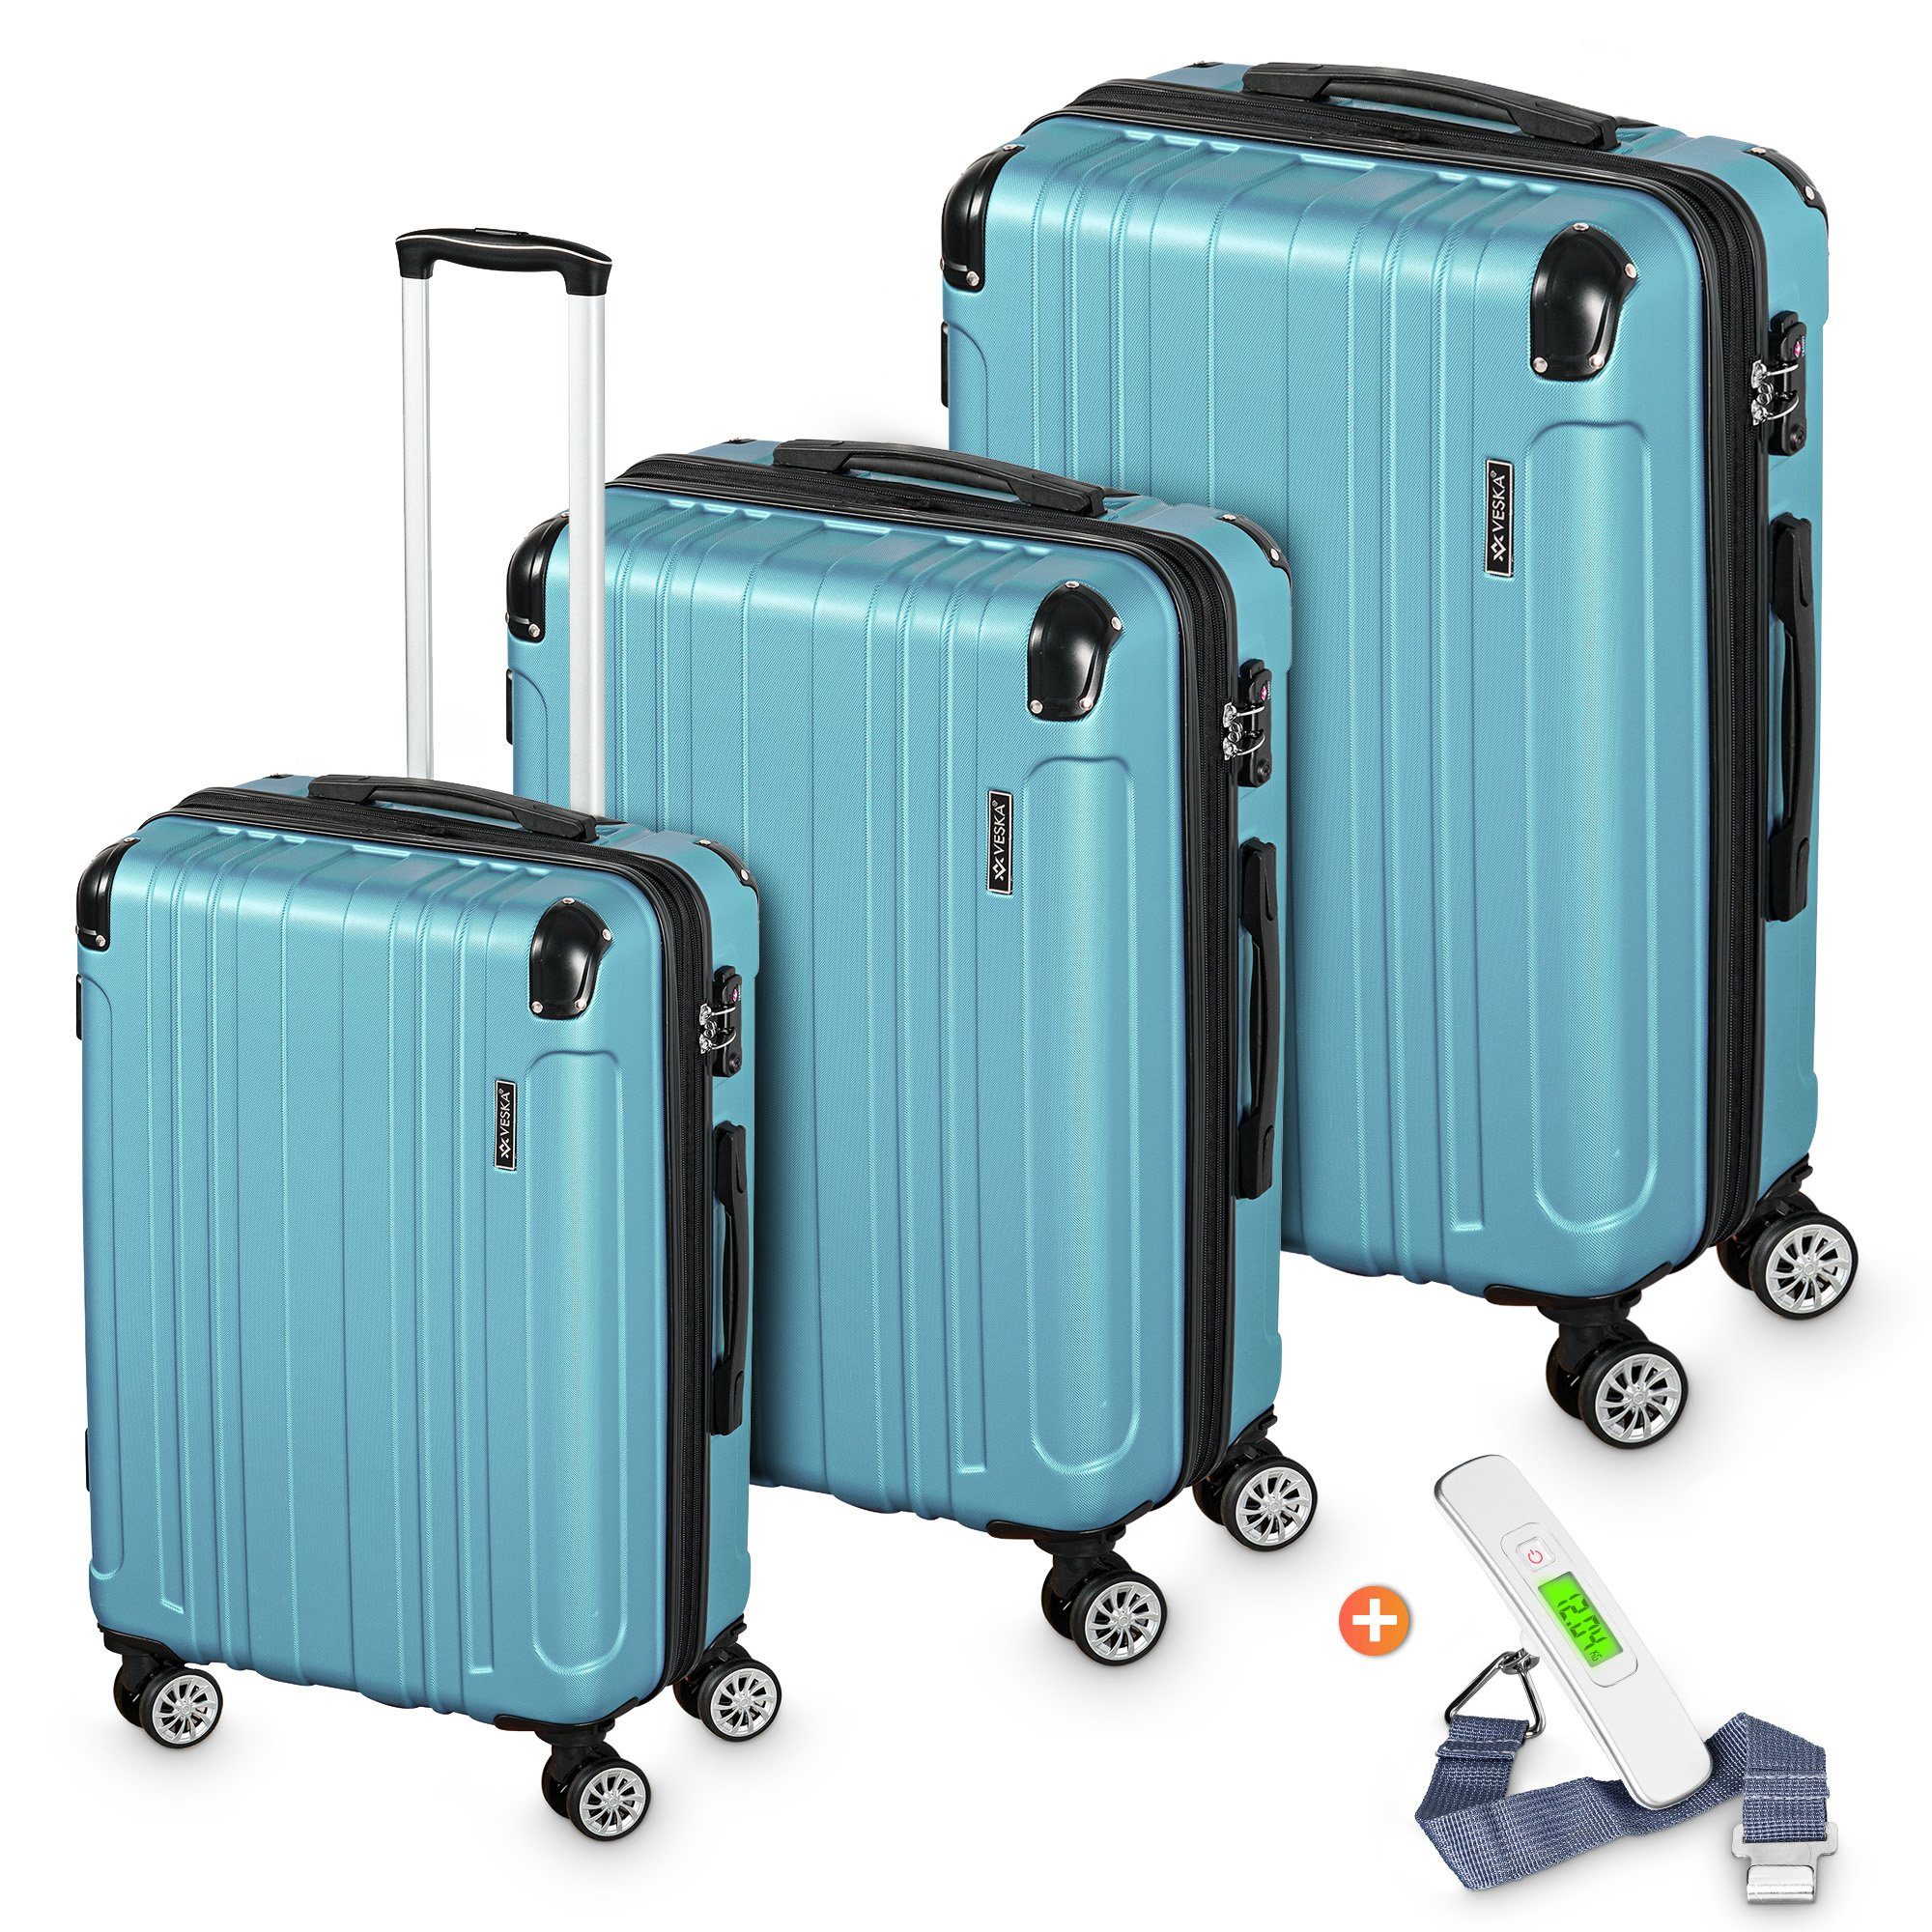 VESKA Trolleyset Hartschalenkoffer Kofferset 3 teilig mit TSA Zahlenschloss 4 Rollen, ABS-Hartschale, Reisekoffer Trolley Rollkoffer Koffer